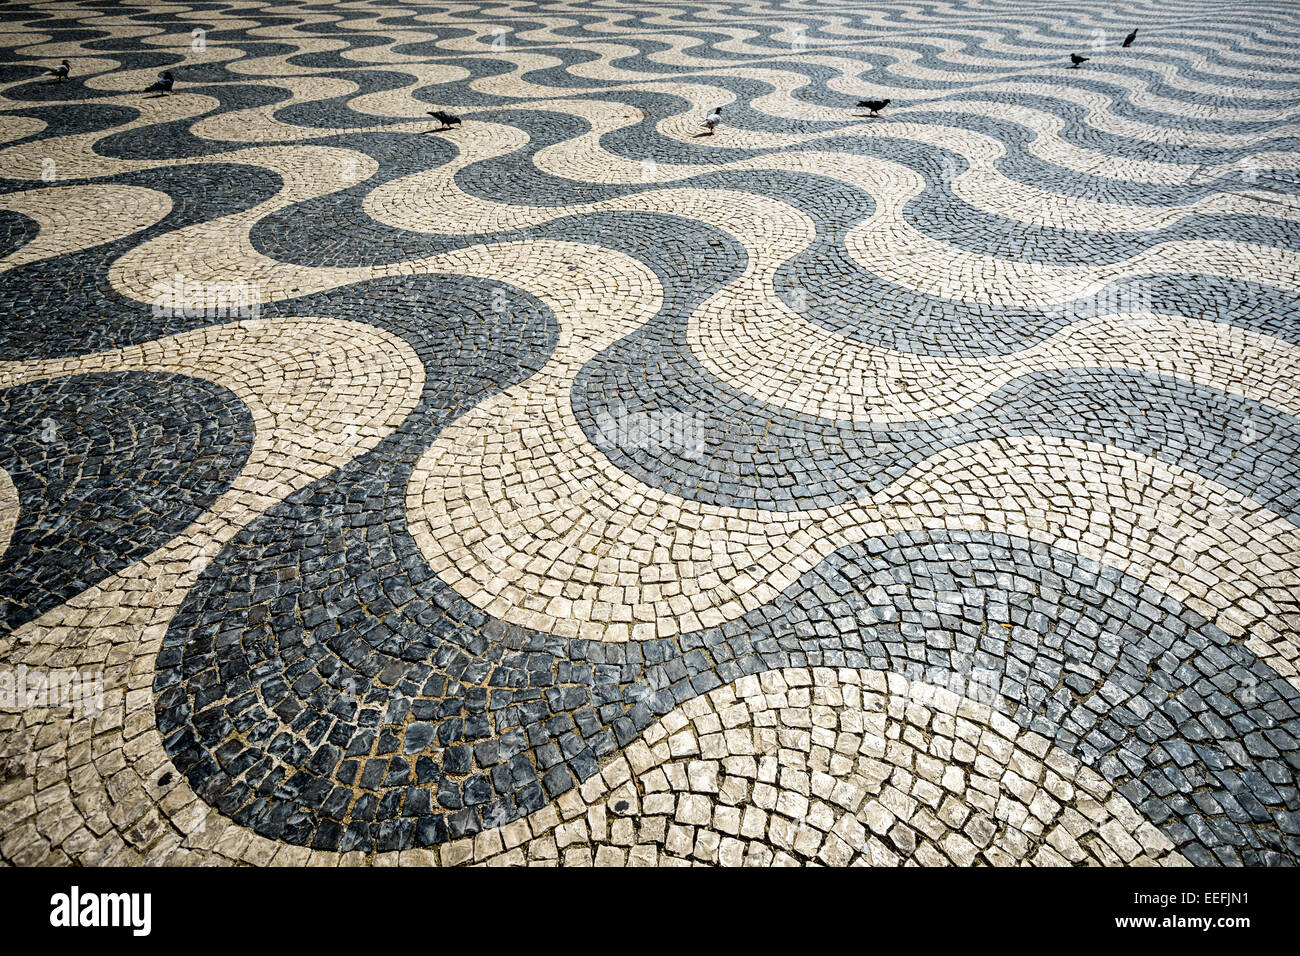 La chaussée portugaise à la place Rossio à Lisbonne, Portugal. Banque D'Images